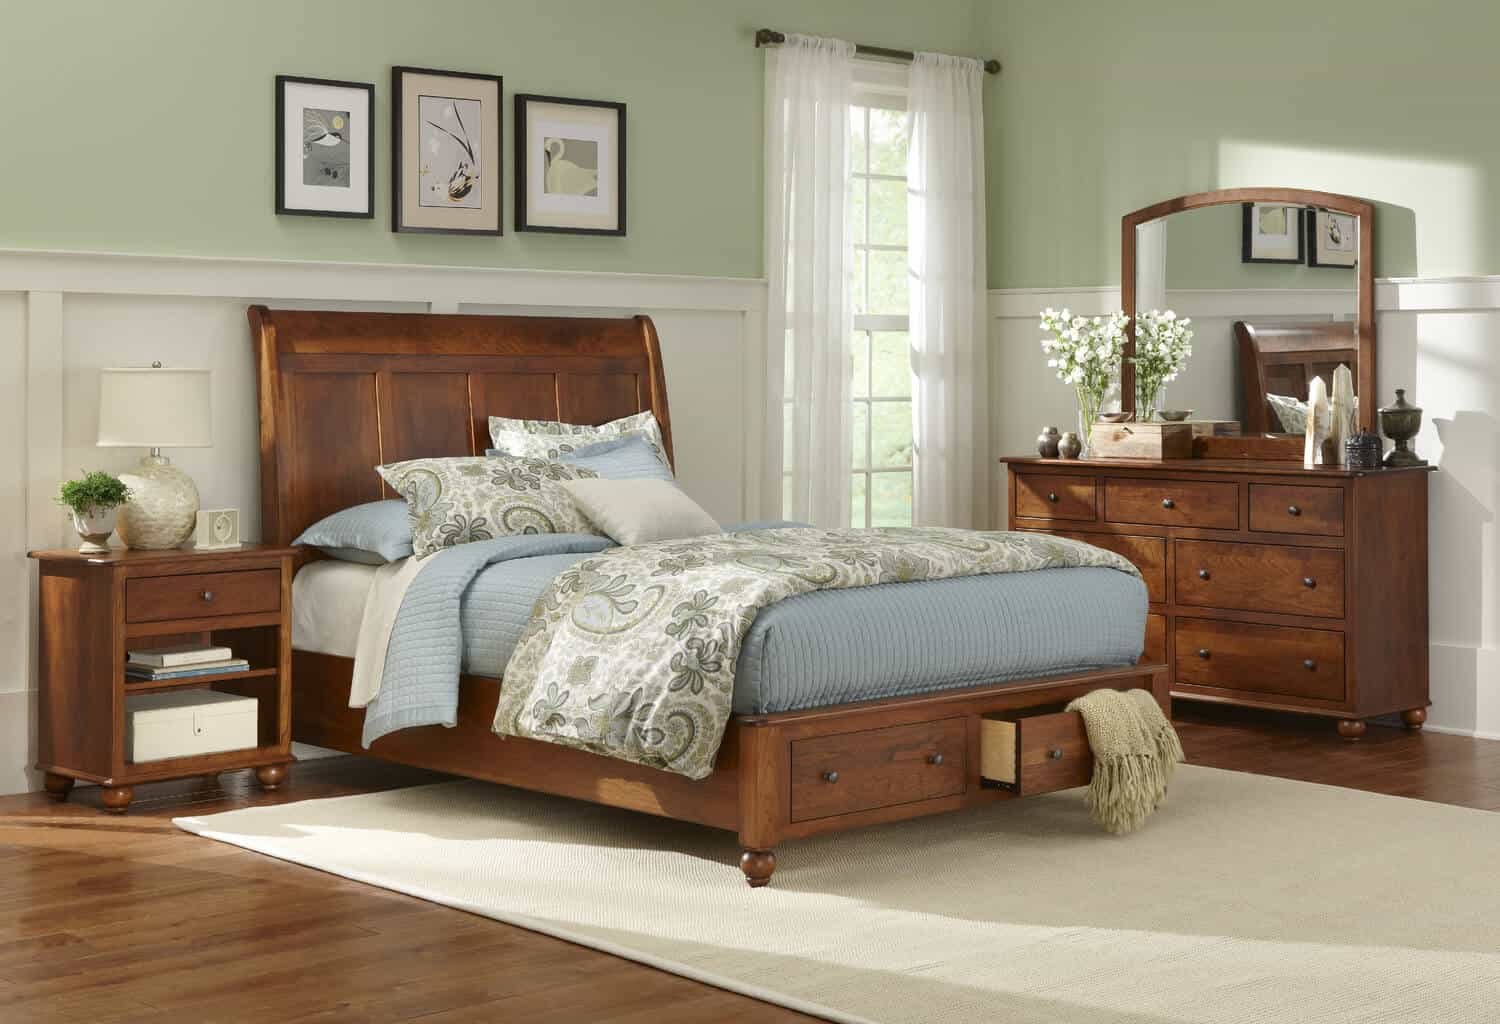 Mẫu giường gỗ cổ điển có ngăn kéo 1